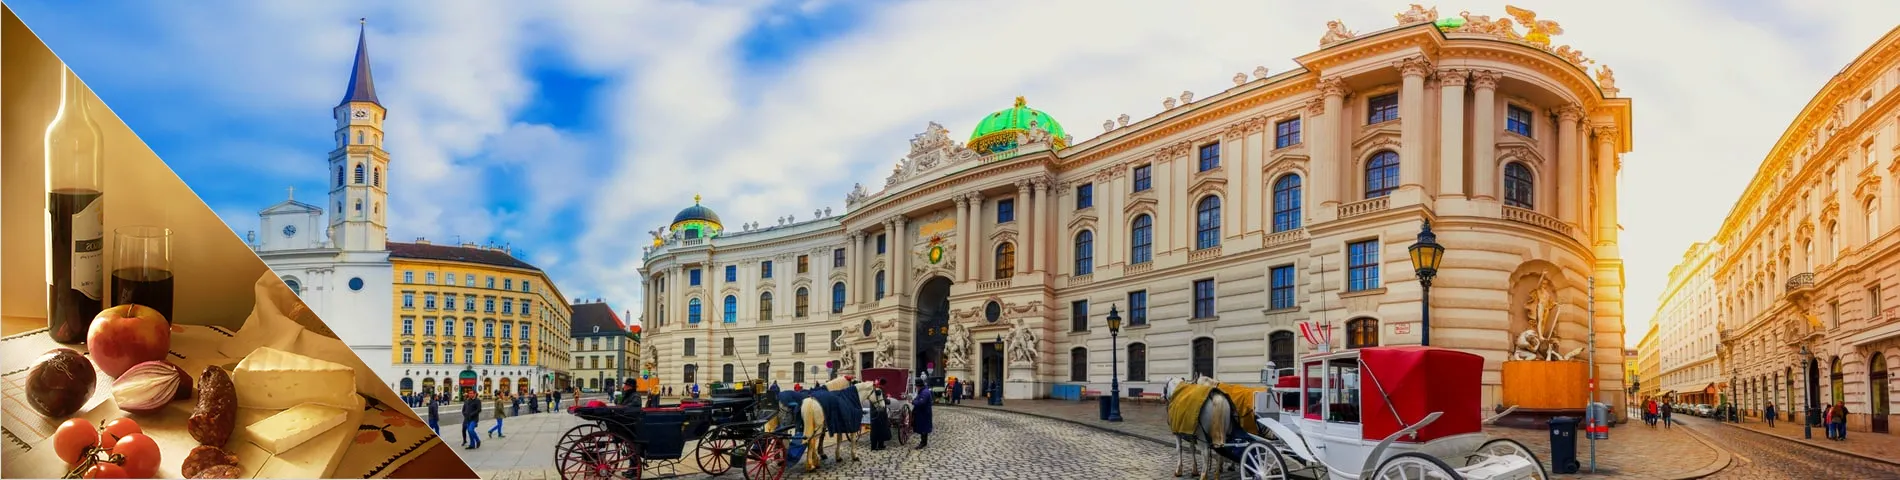 Viedeň - Nemčina a kultúra